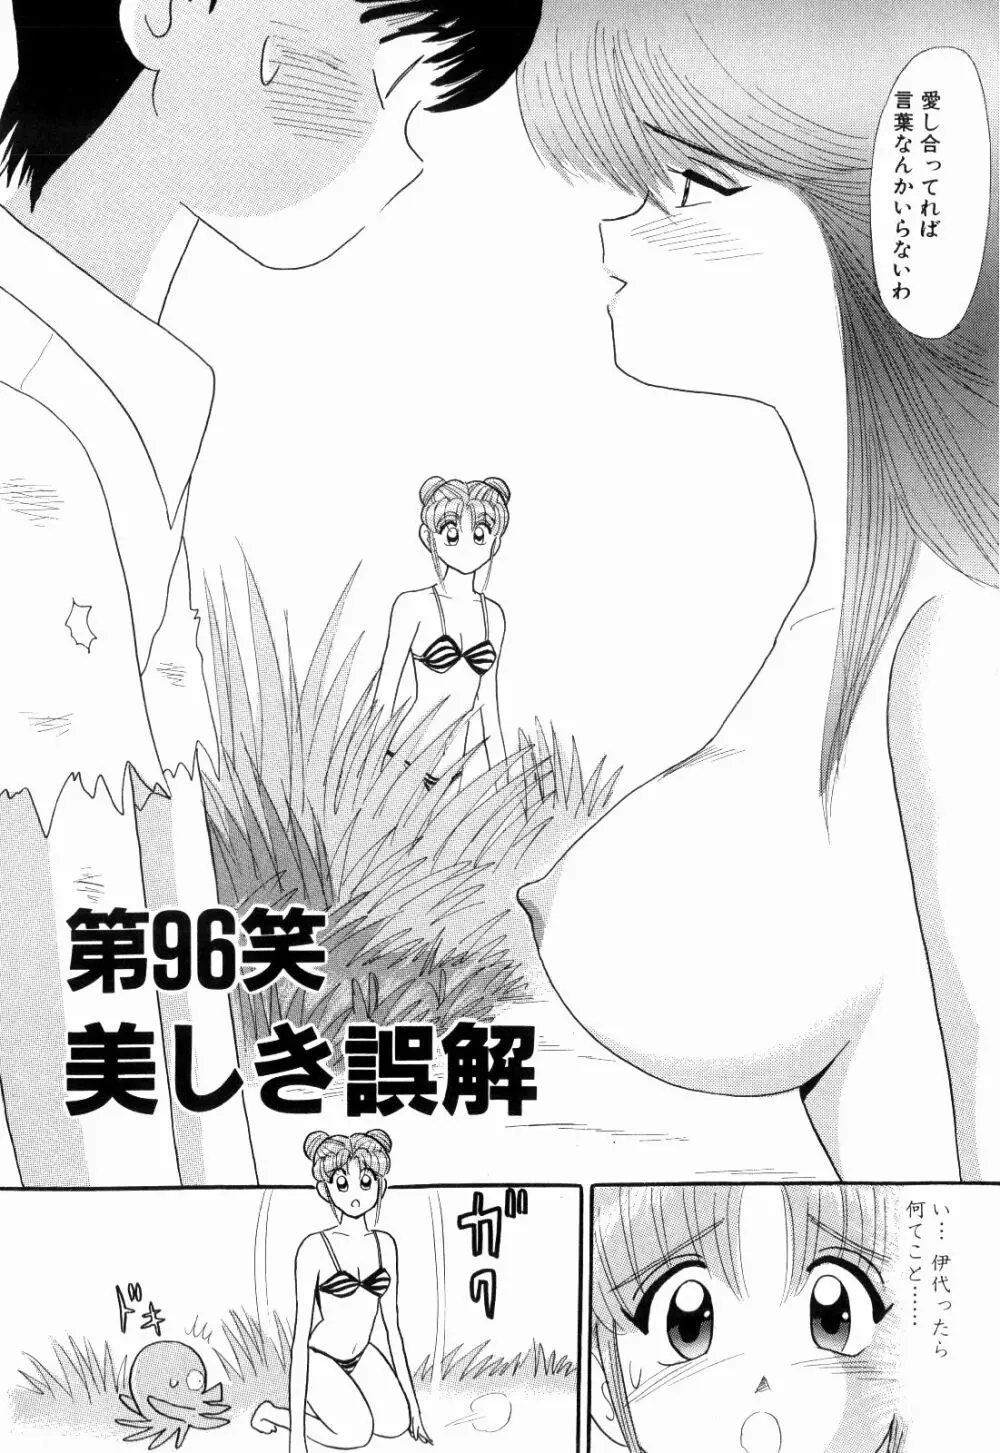 Kenjiro Kakimoto – Futari Kurashi 08 14ページ